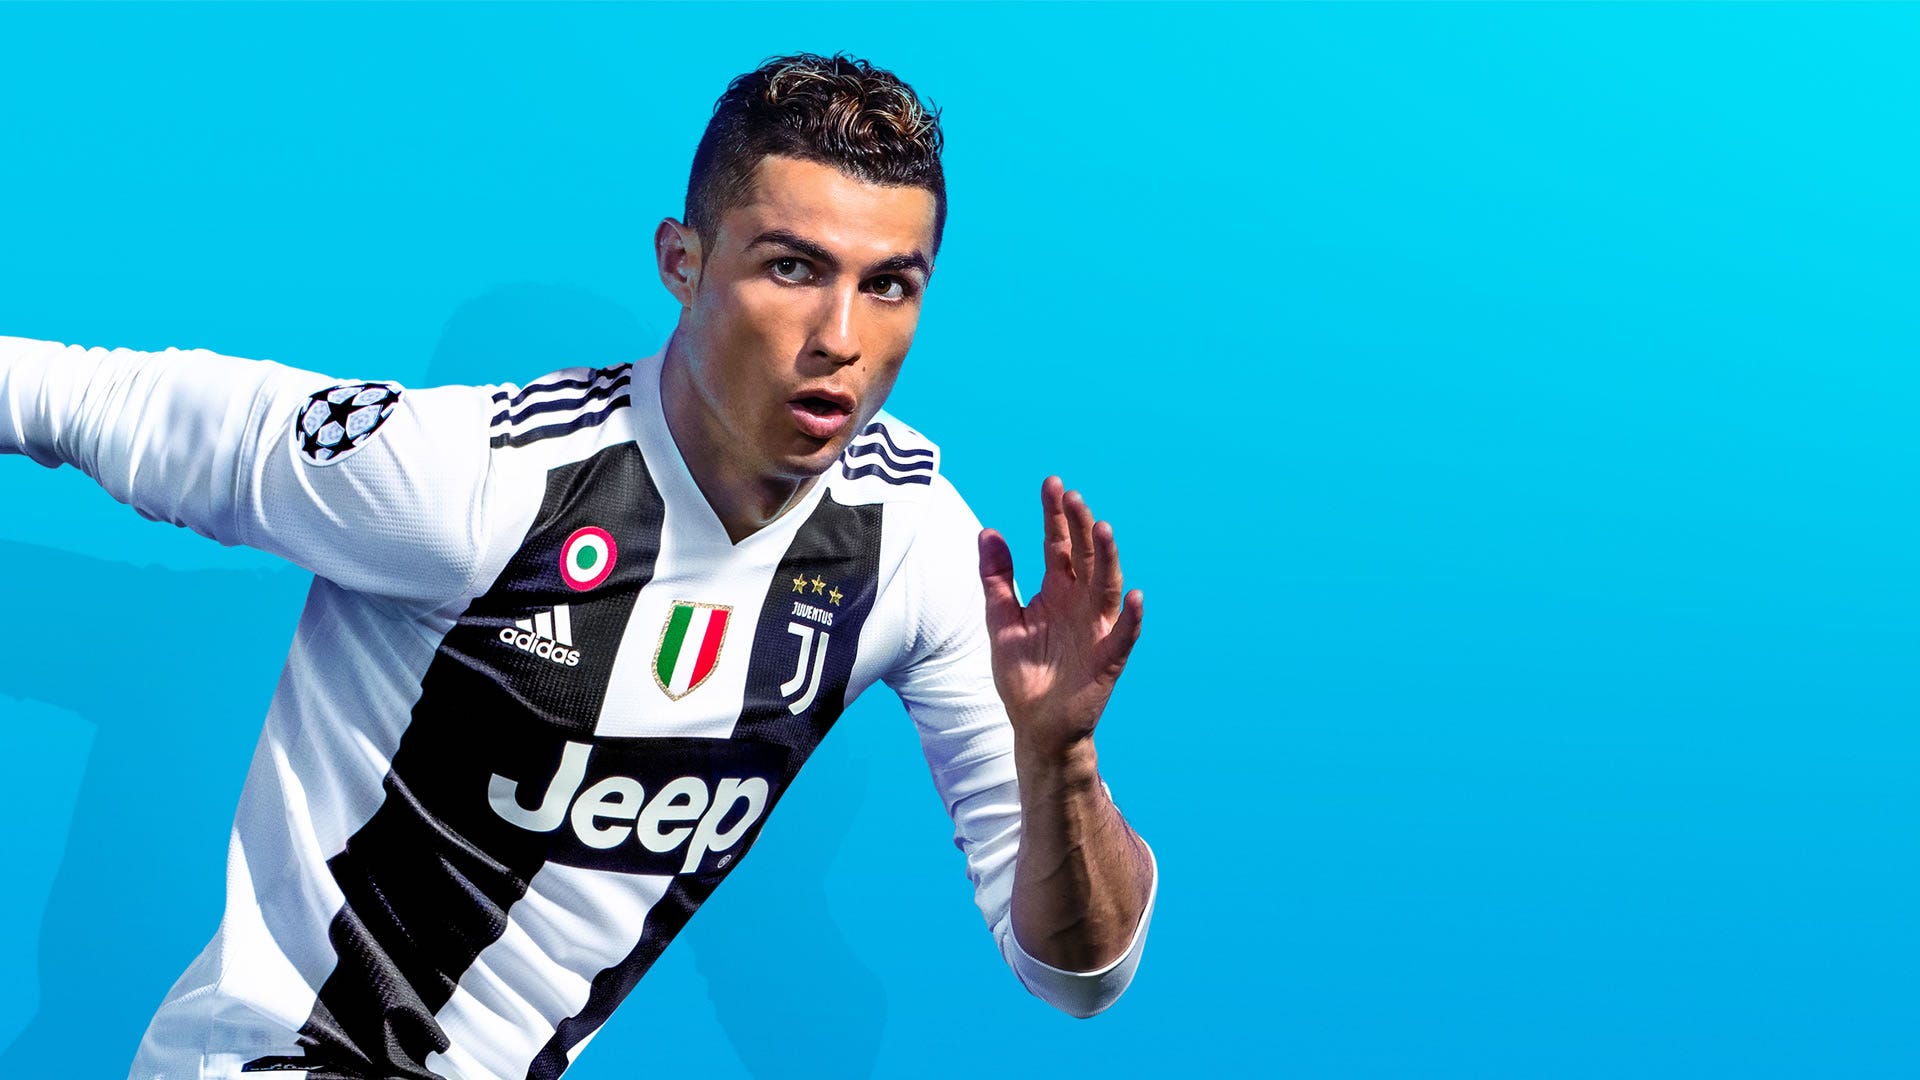 Cristiano Ronaldo FIFA 19 cover